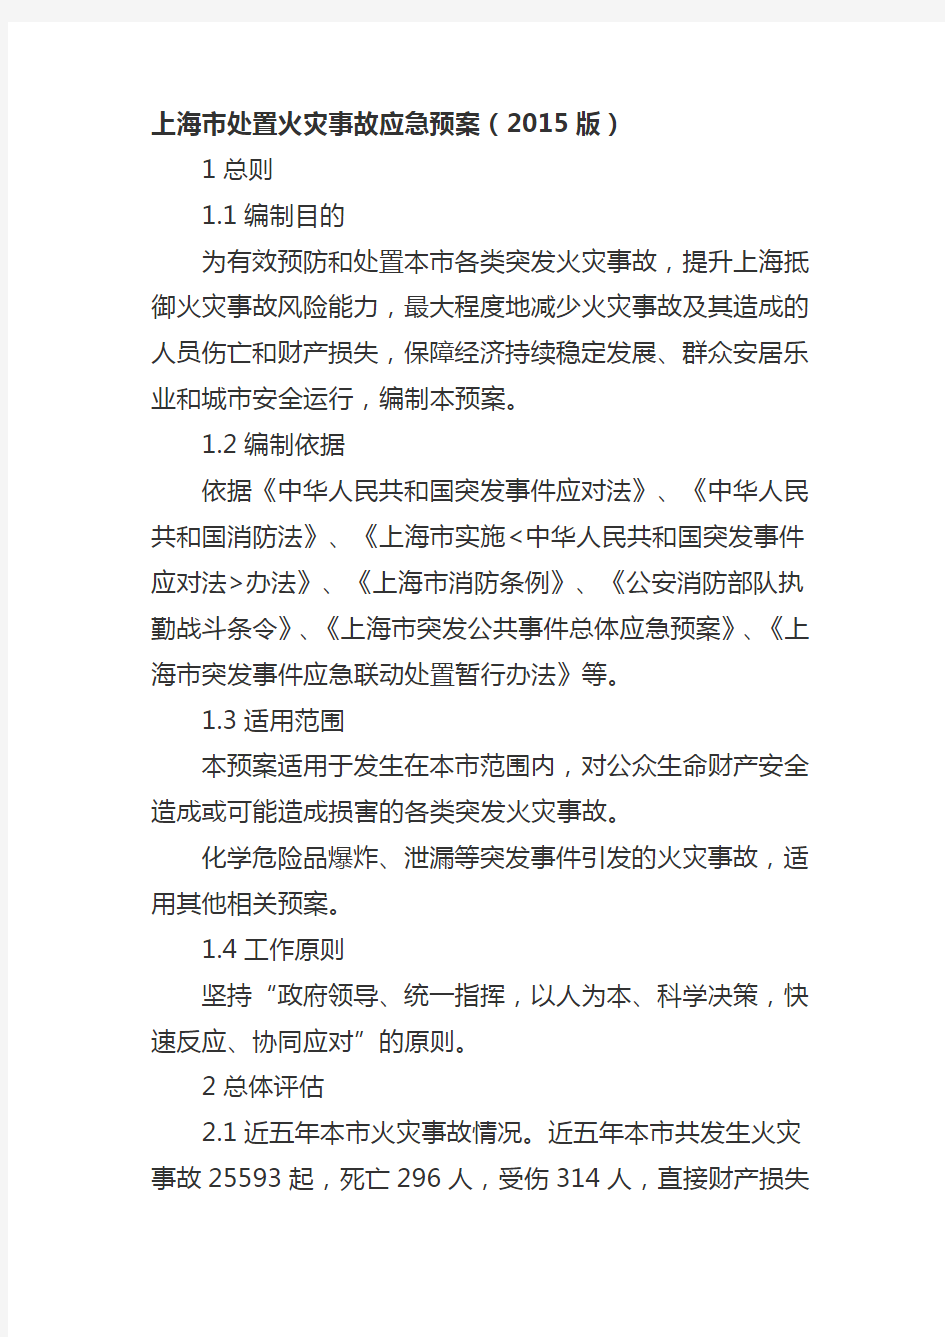 上海市处置火灾事故应急预案